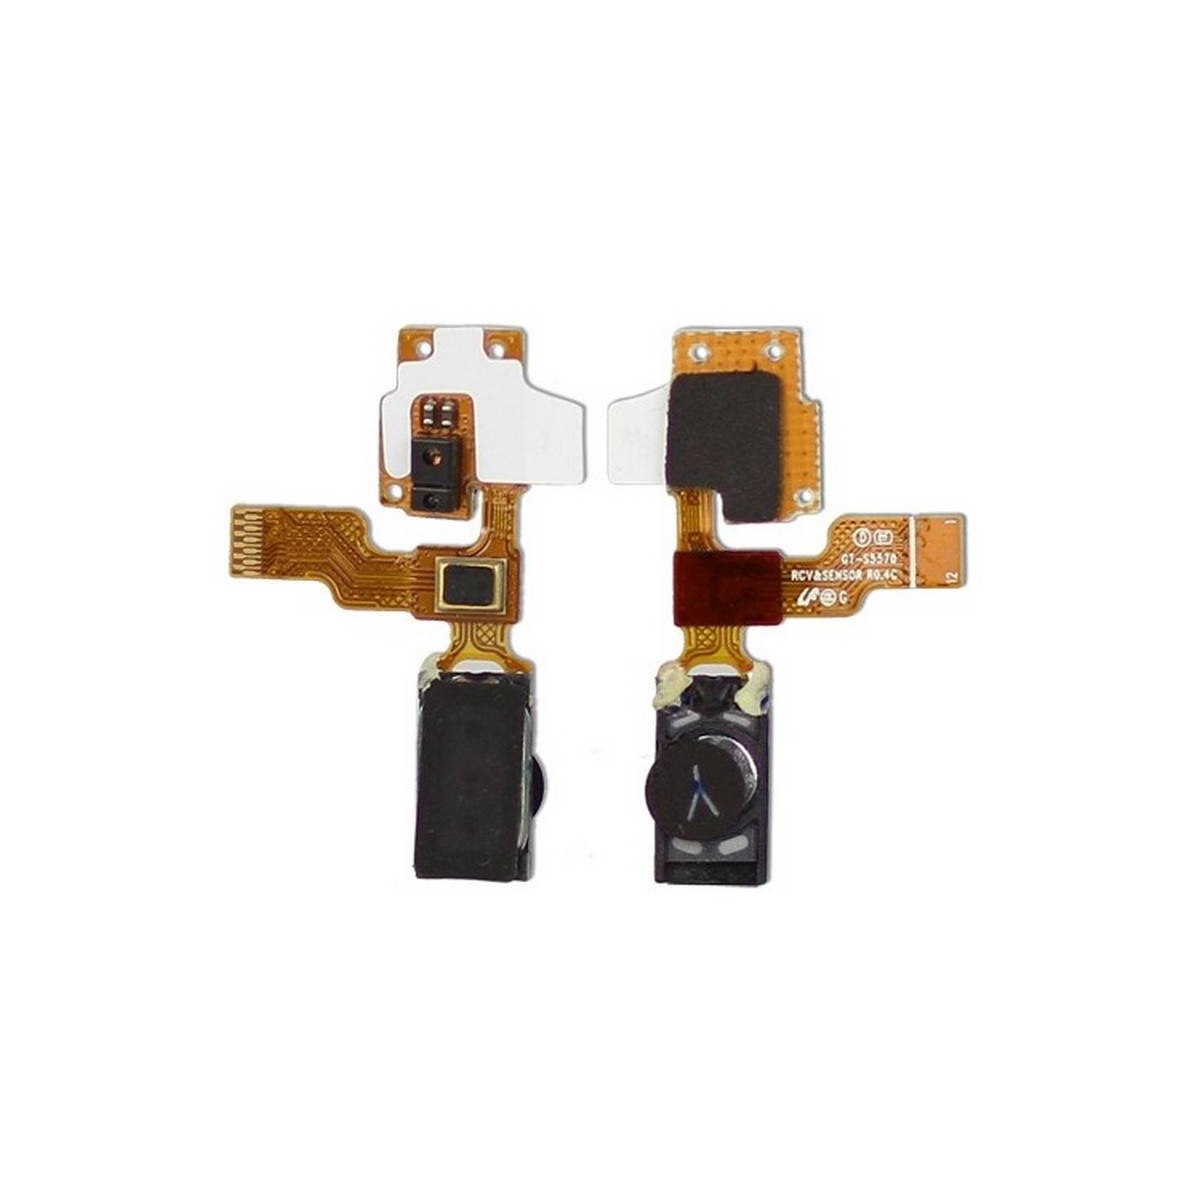 Cable flex con altavoz auricular+ MICROFONO de Samsung Galaxy Mini S5570 